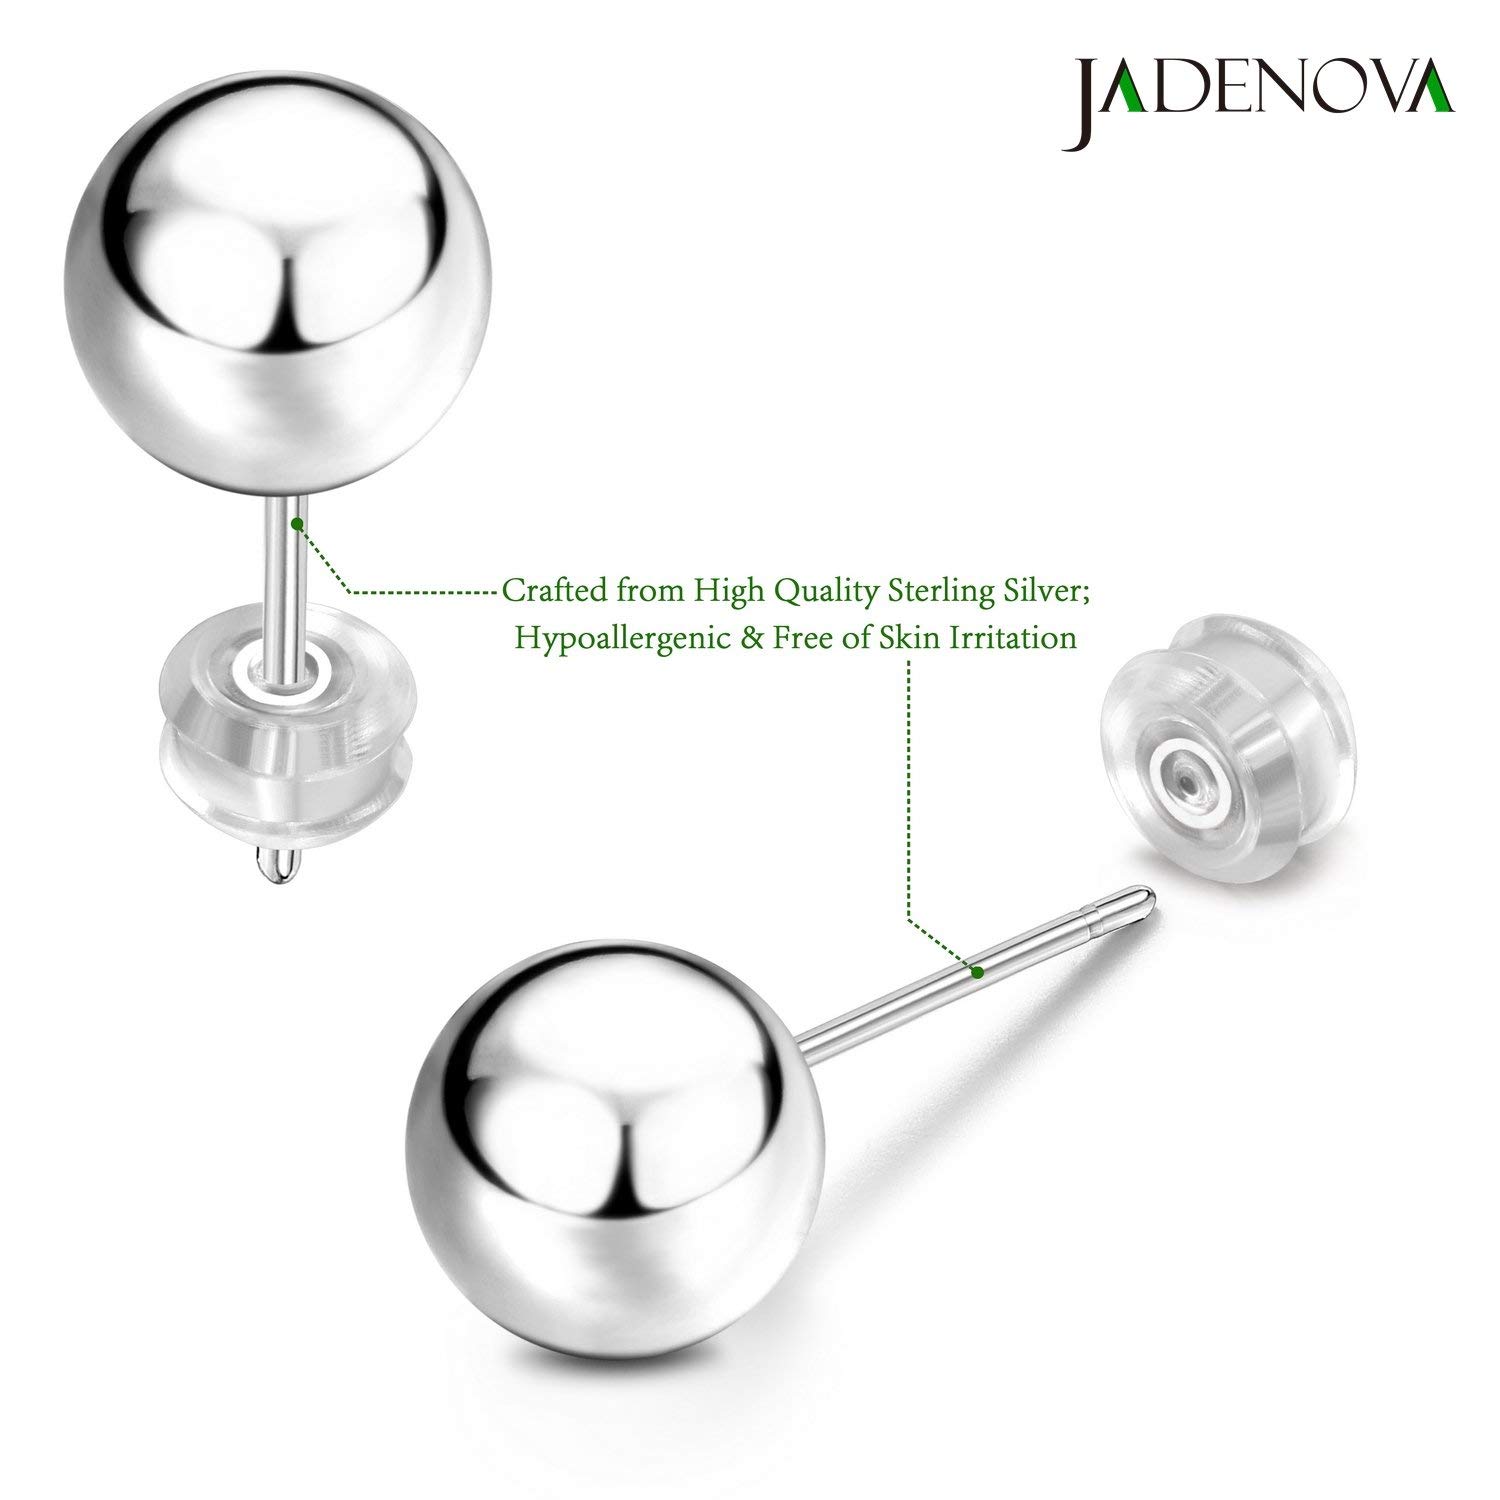 JADENOVA 925 Sterling Silver Ball Stud Earrings for Women Multiple Piercing Earring Set Round Tiny Large Studs for Sensitive Ear Hypoallergenic Men (6 pair,3mm-8mm)